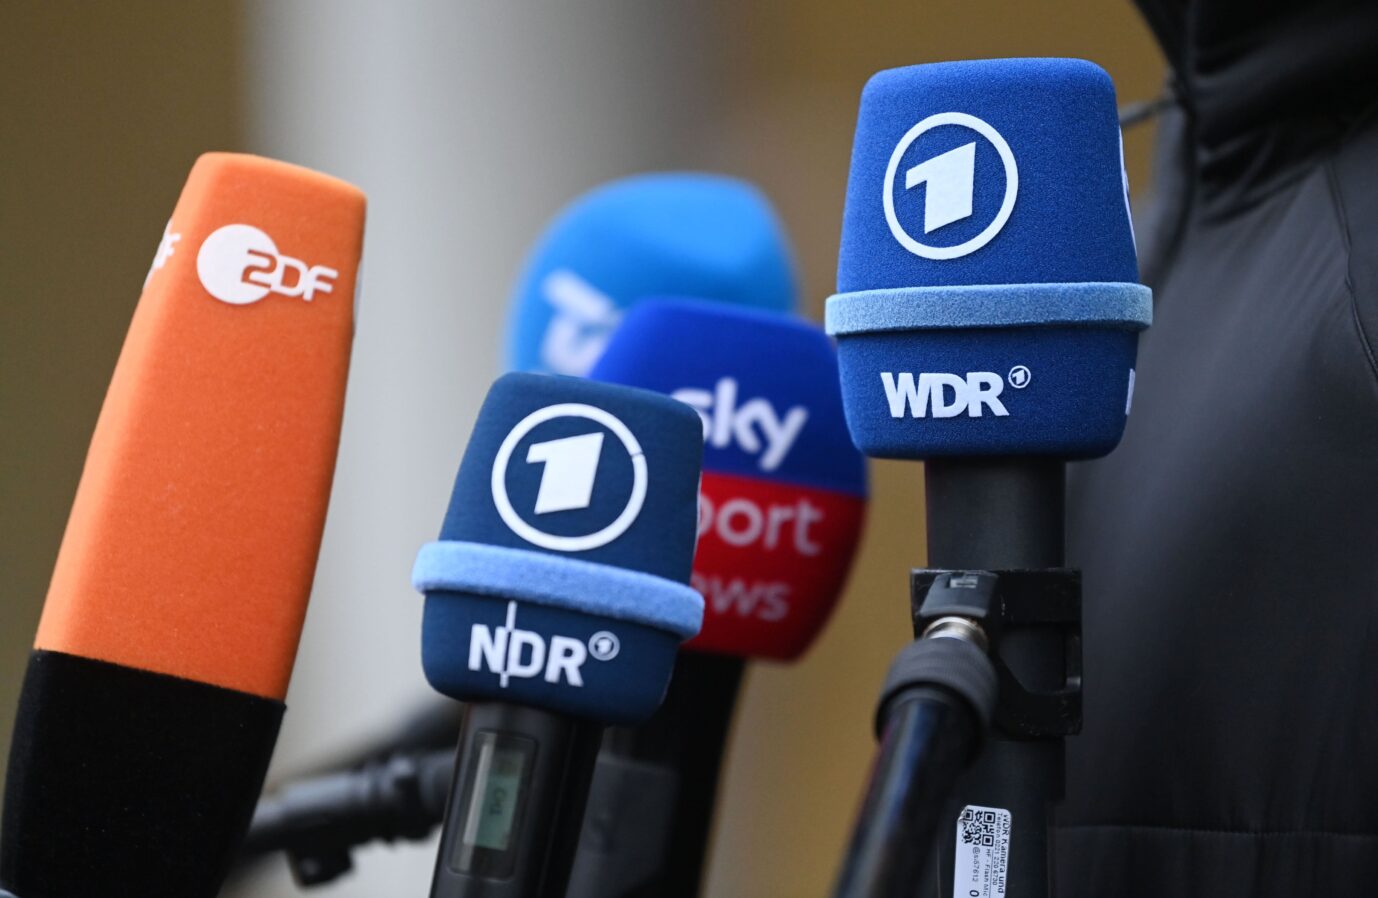 Rundfunkbeitrag und GEZ. Laut Umfrage in Sachsen-Anhalt wollen 92 Prozent keine Erhöhung des Zwangsbeitrags für ARD, ZDF und Deutschlandradio.